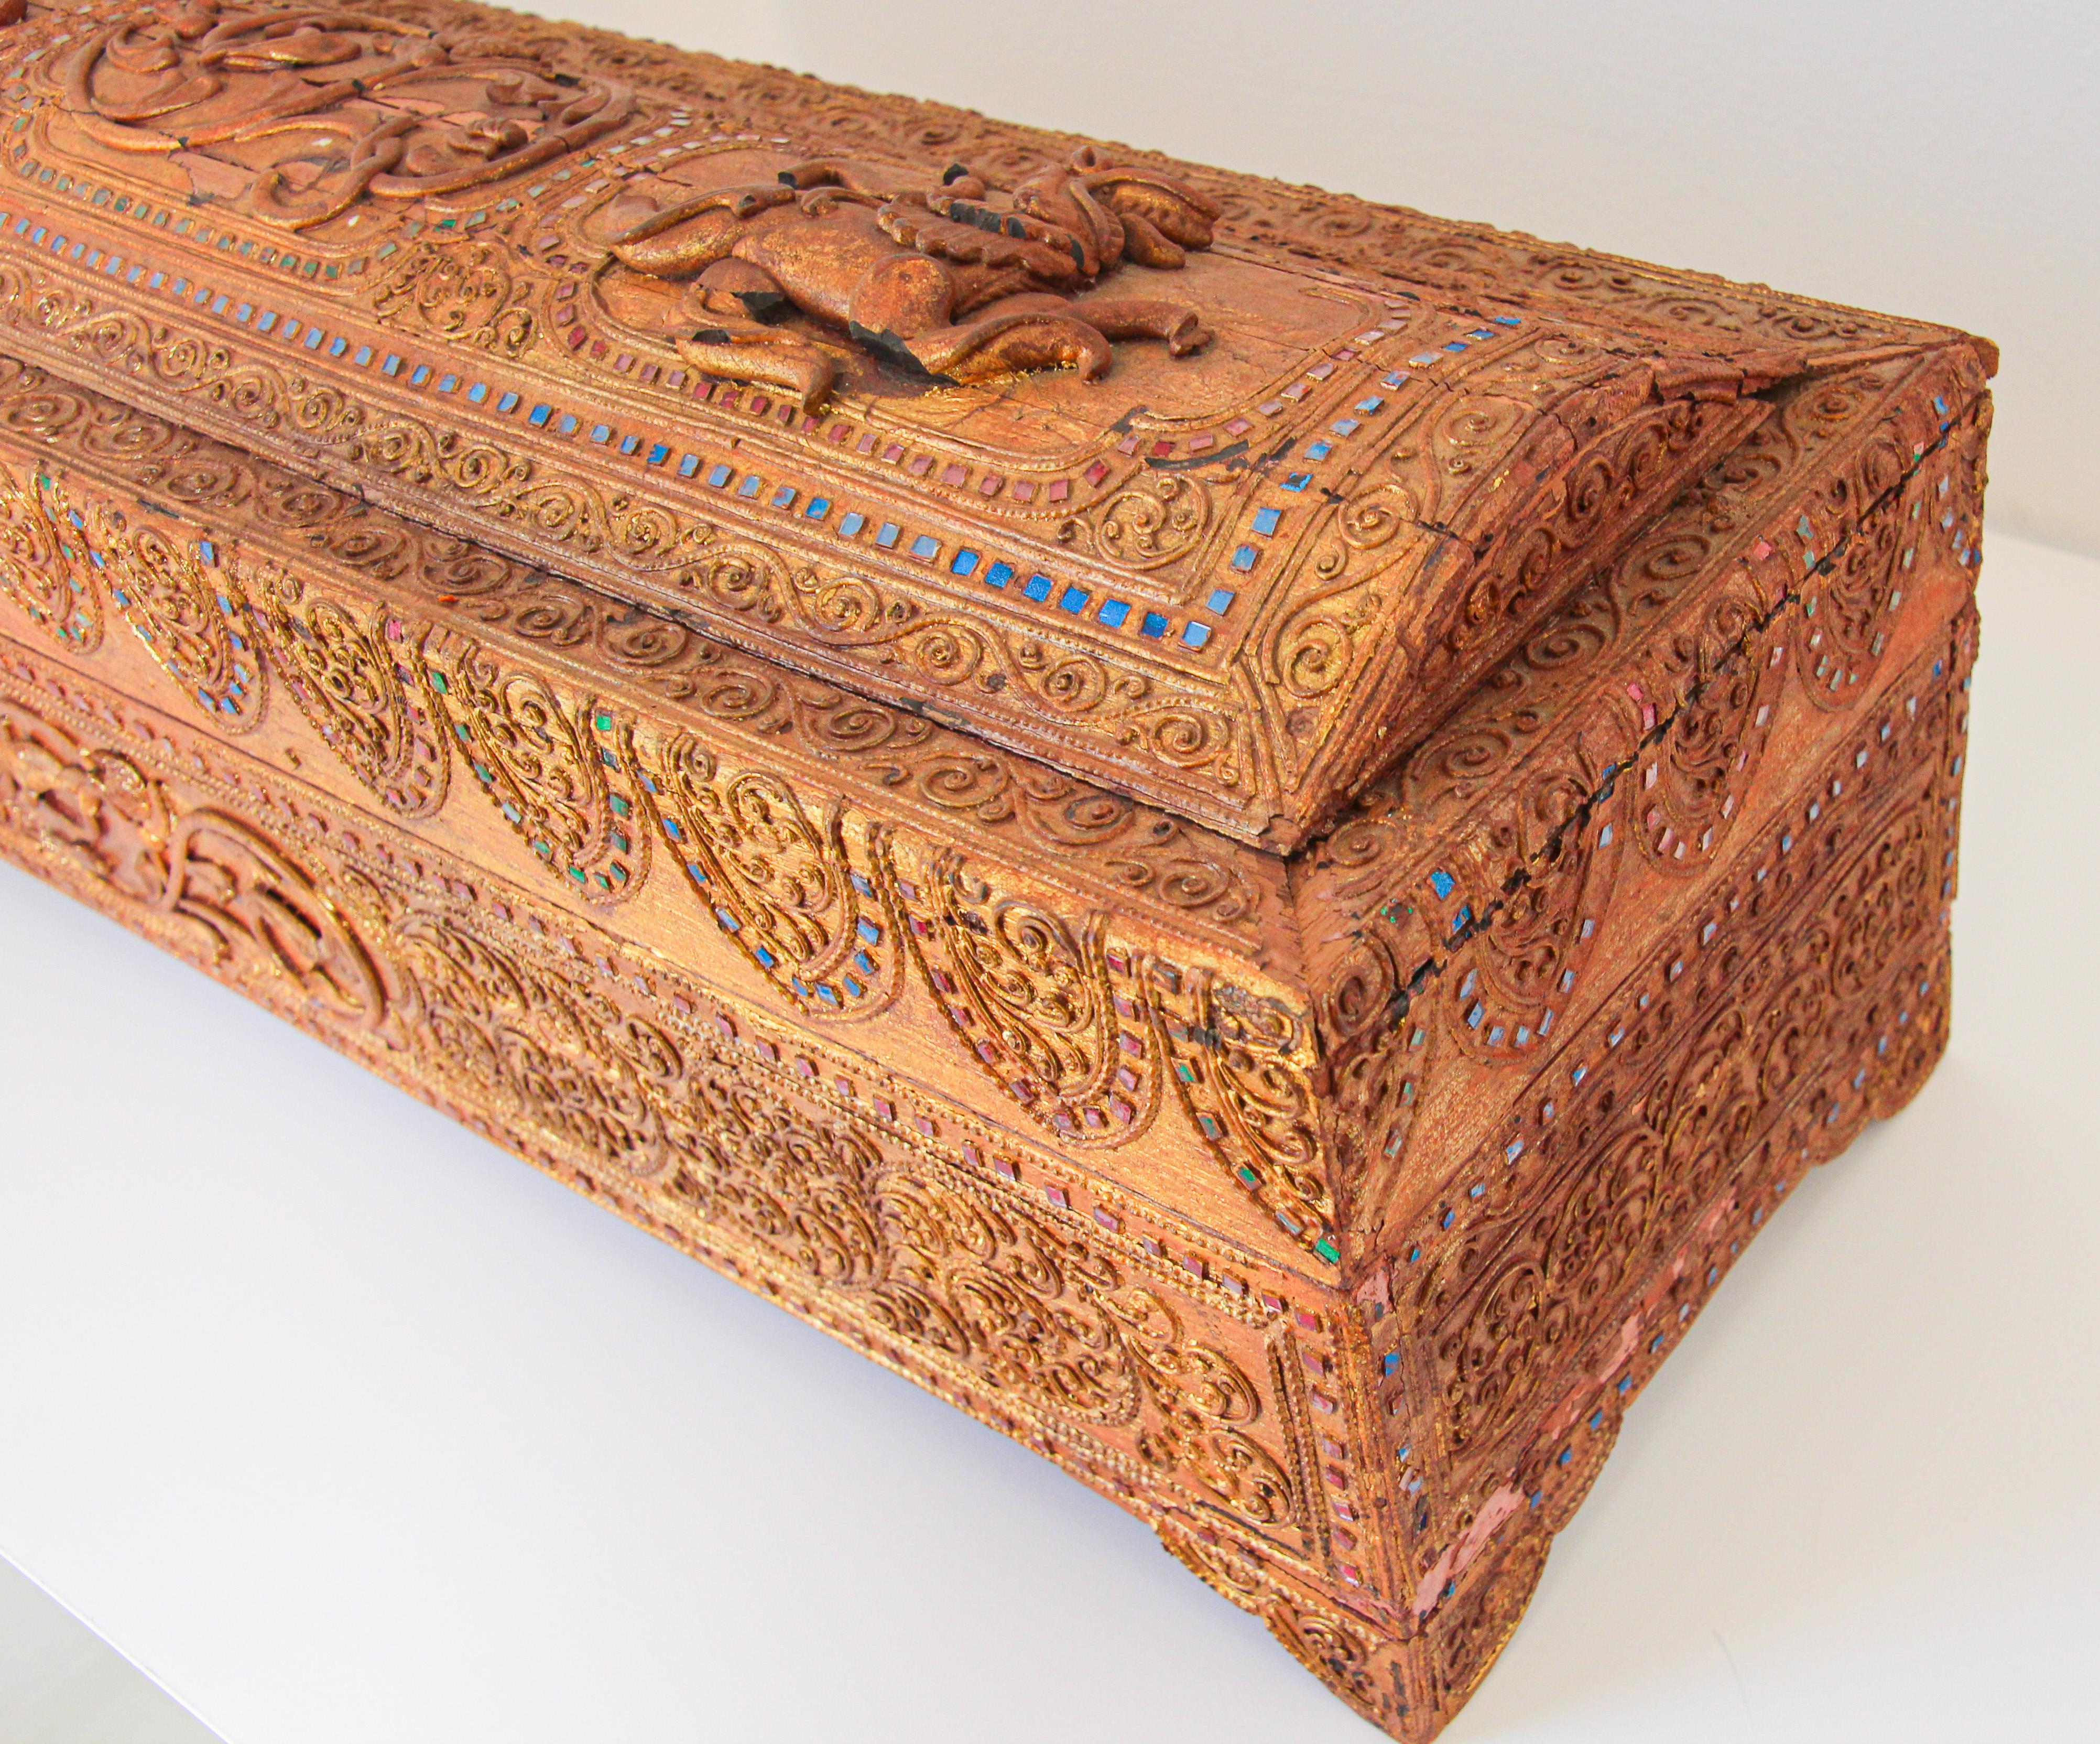 Boîte de rangement pour manuscrits en bois laqué doré Birmanie 19e siècle.
Cette boîte en bois est entièrement recouverte de laque moulée en relief (dite thayo) et de dorure (feuille d'or) et a été incrustée de petits morceaux de verre à fond